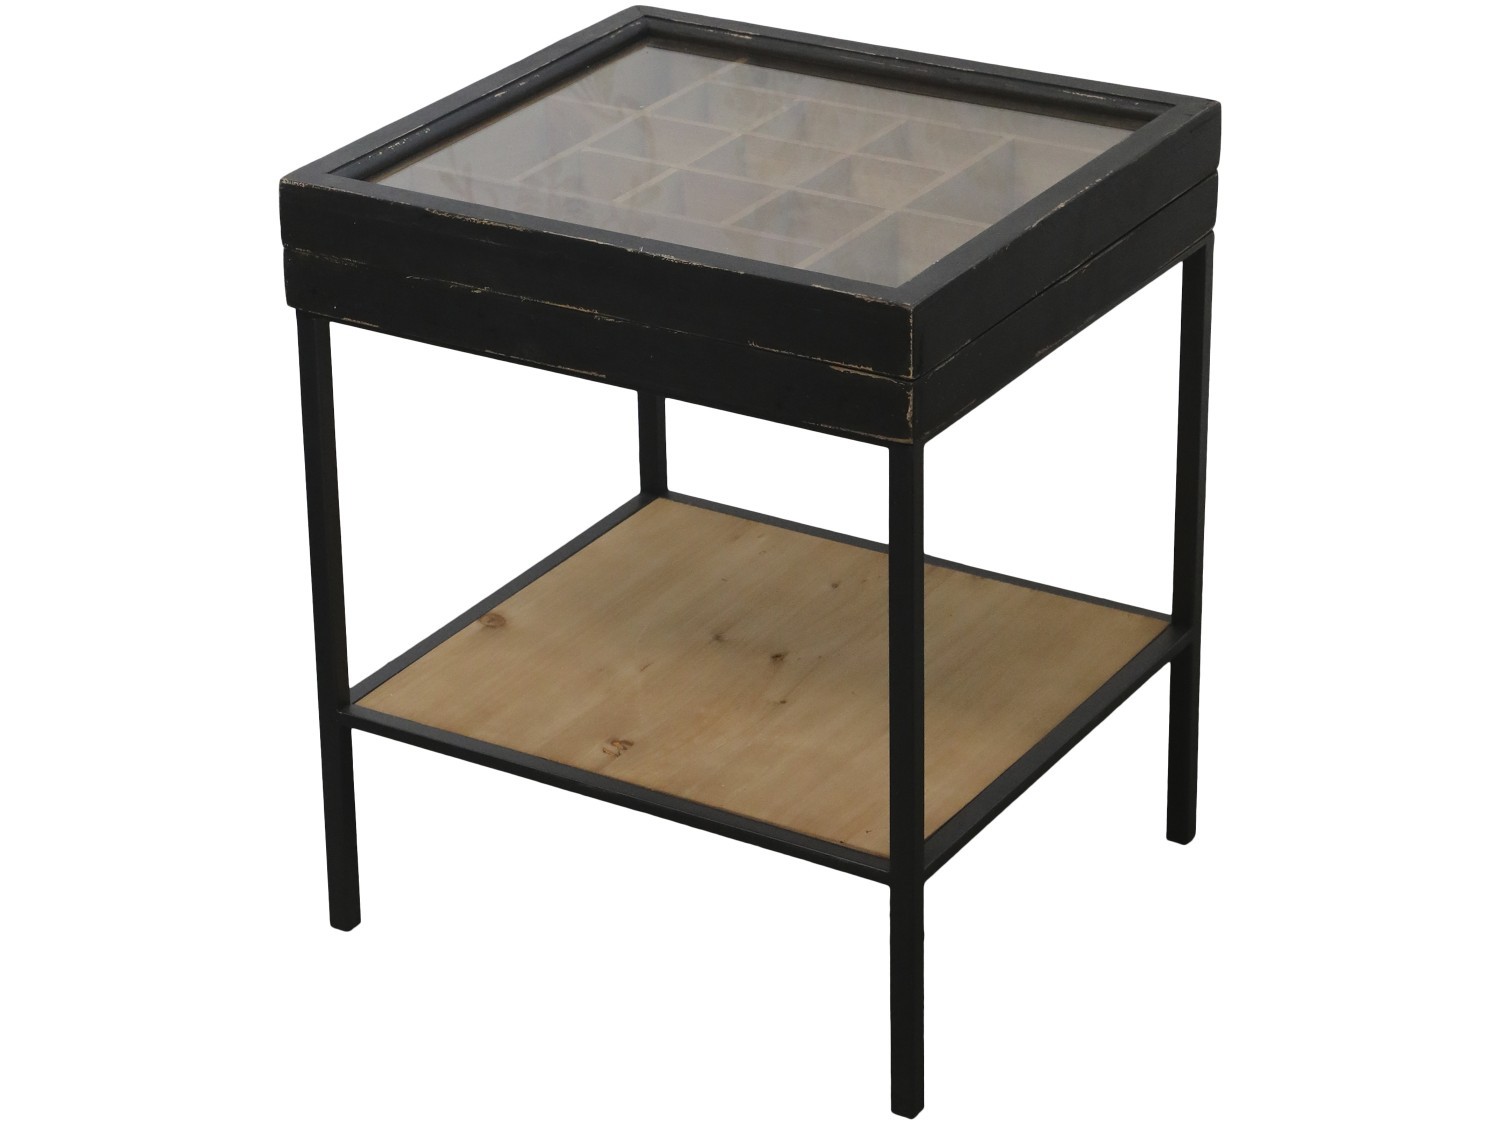 Černý antik dřevěný coffee stolek s přihrádkami Storien - 44*41*53 cm Chic Antique